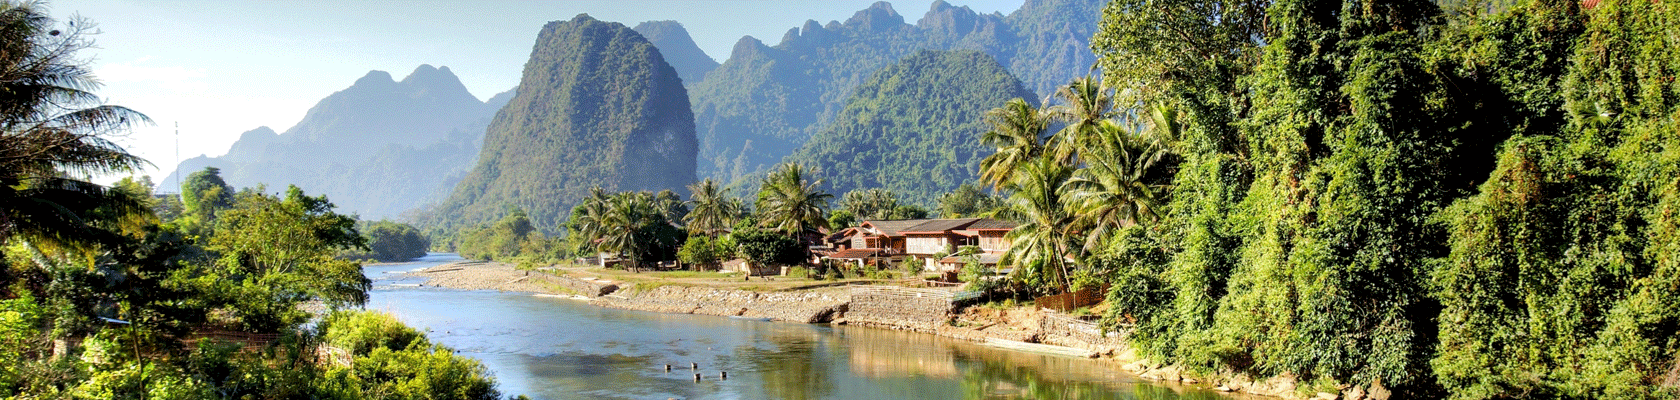 Rondreis Vietnam